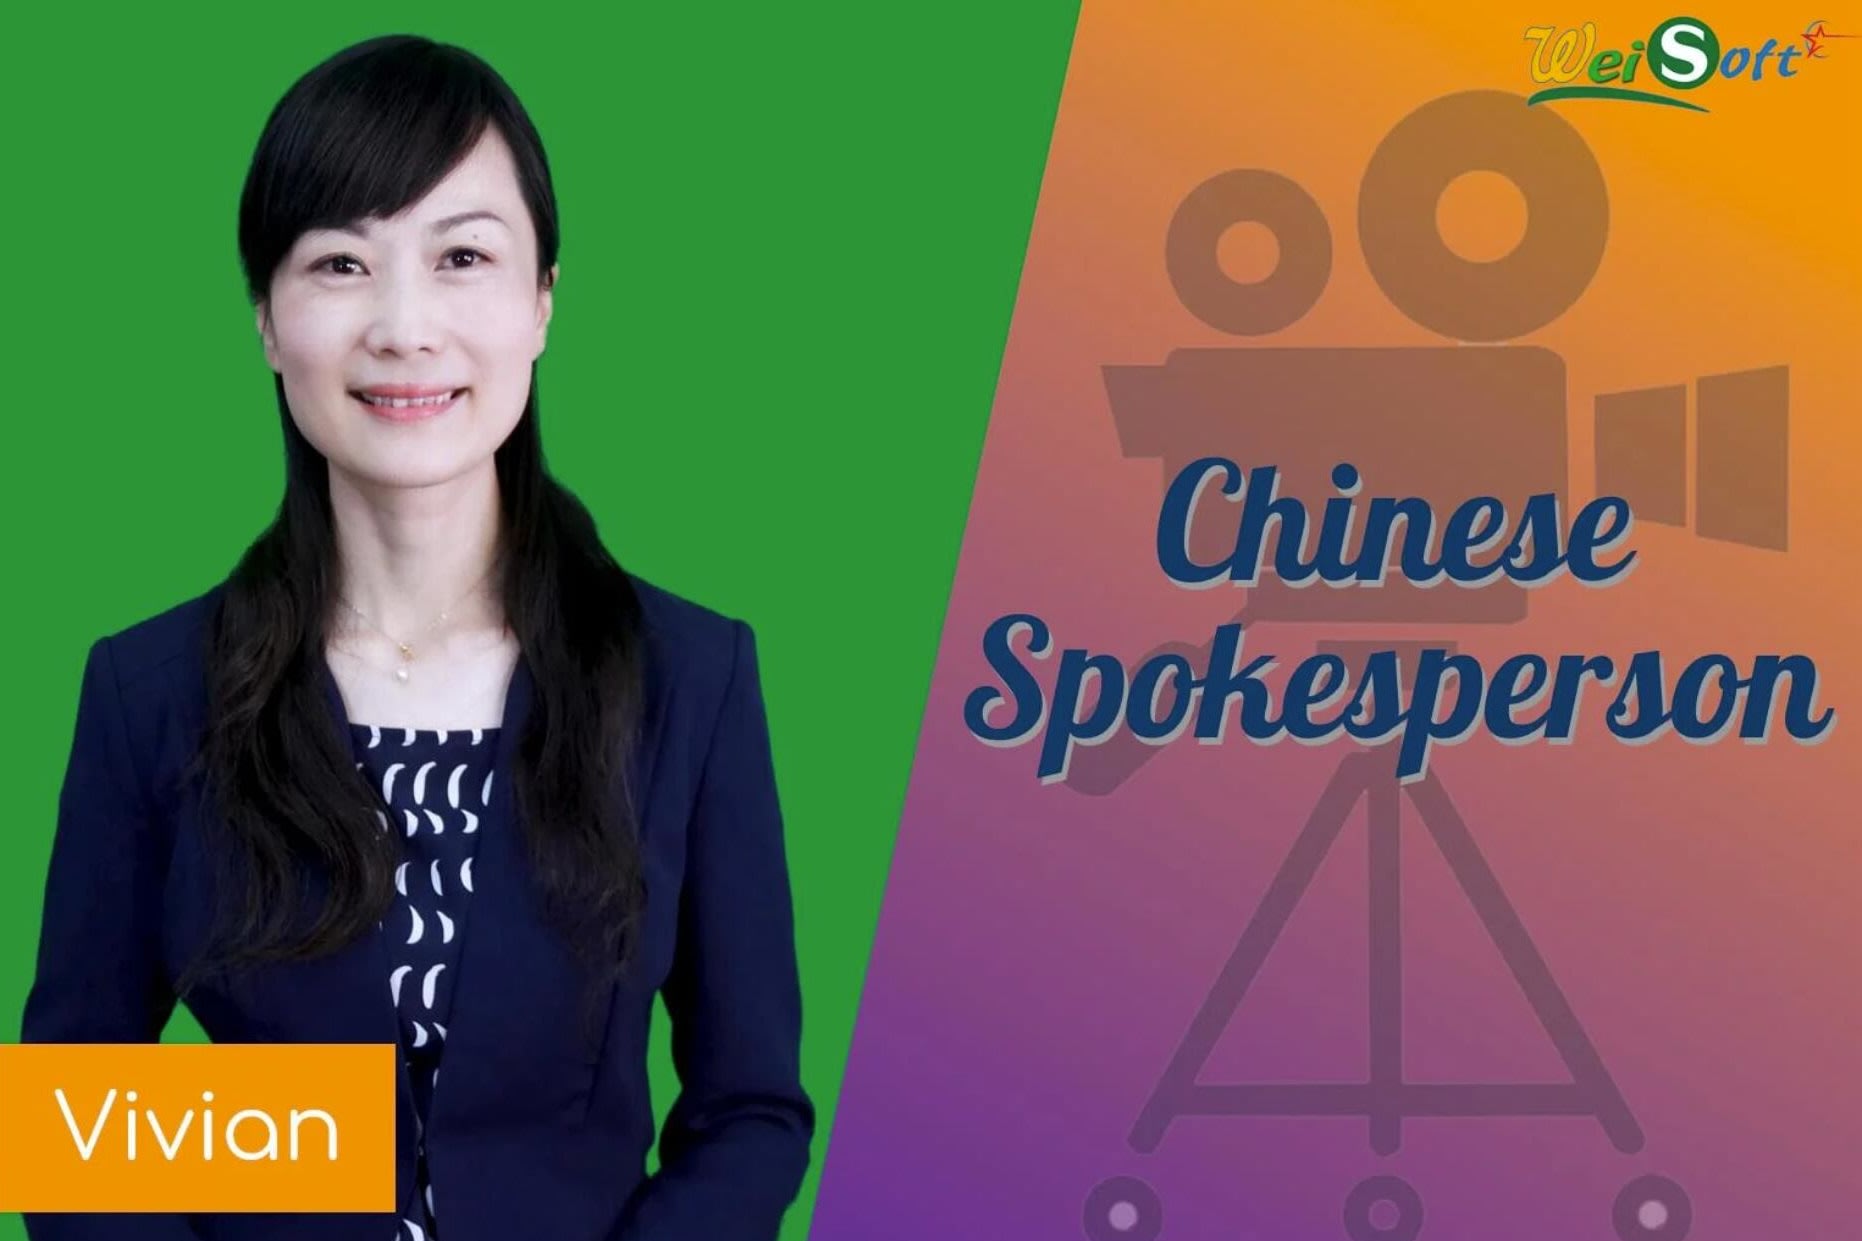 Portfolio for Video spokesperson presenter in chinese